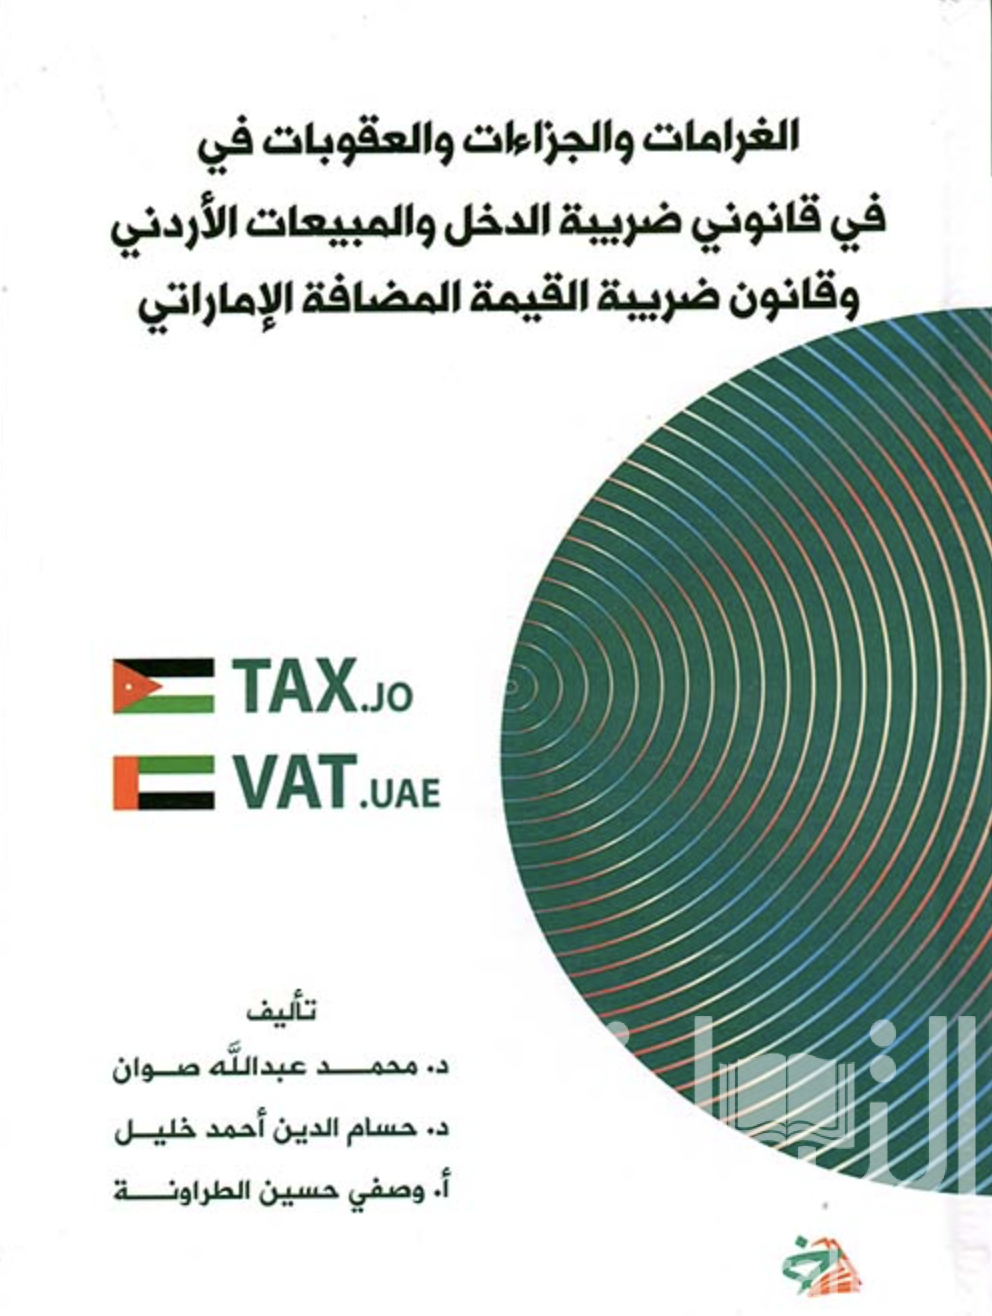 كتاب الغرامات والجزاءات والعقوبات في قانوني ضريبة الدخل والمبيعات الأردني وقانون ضريبة القيمة المضافة الإماراتي